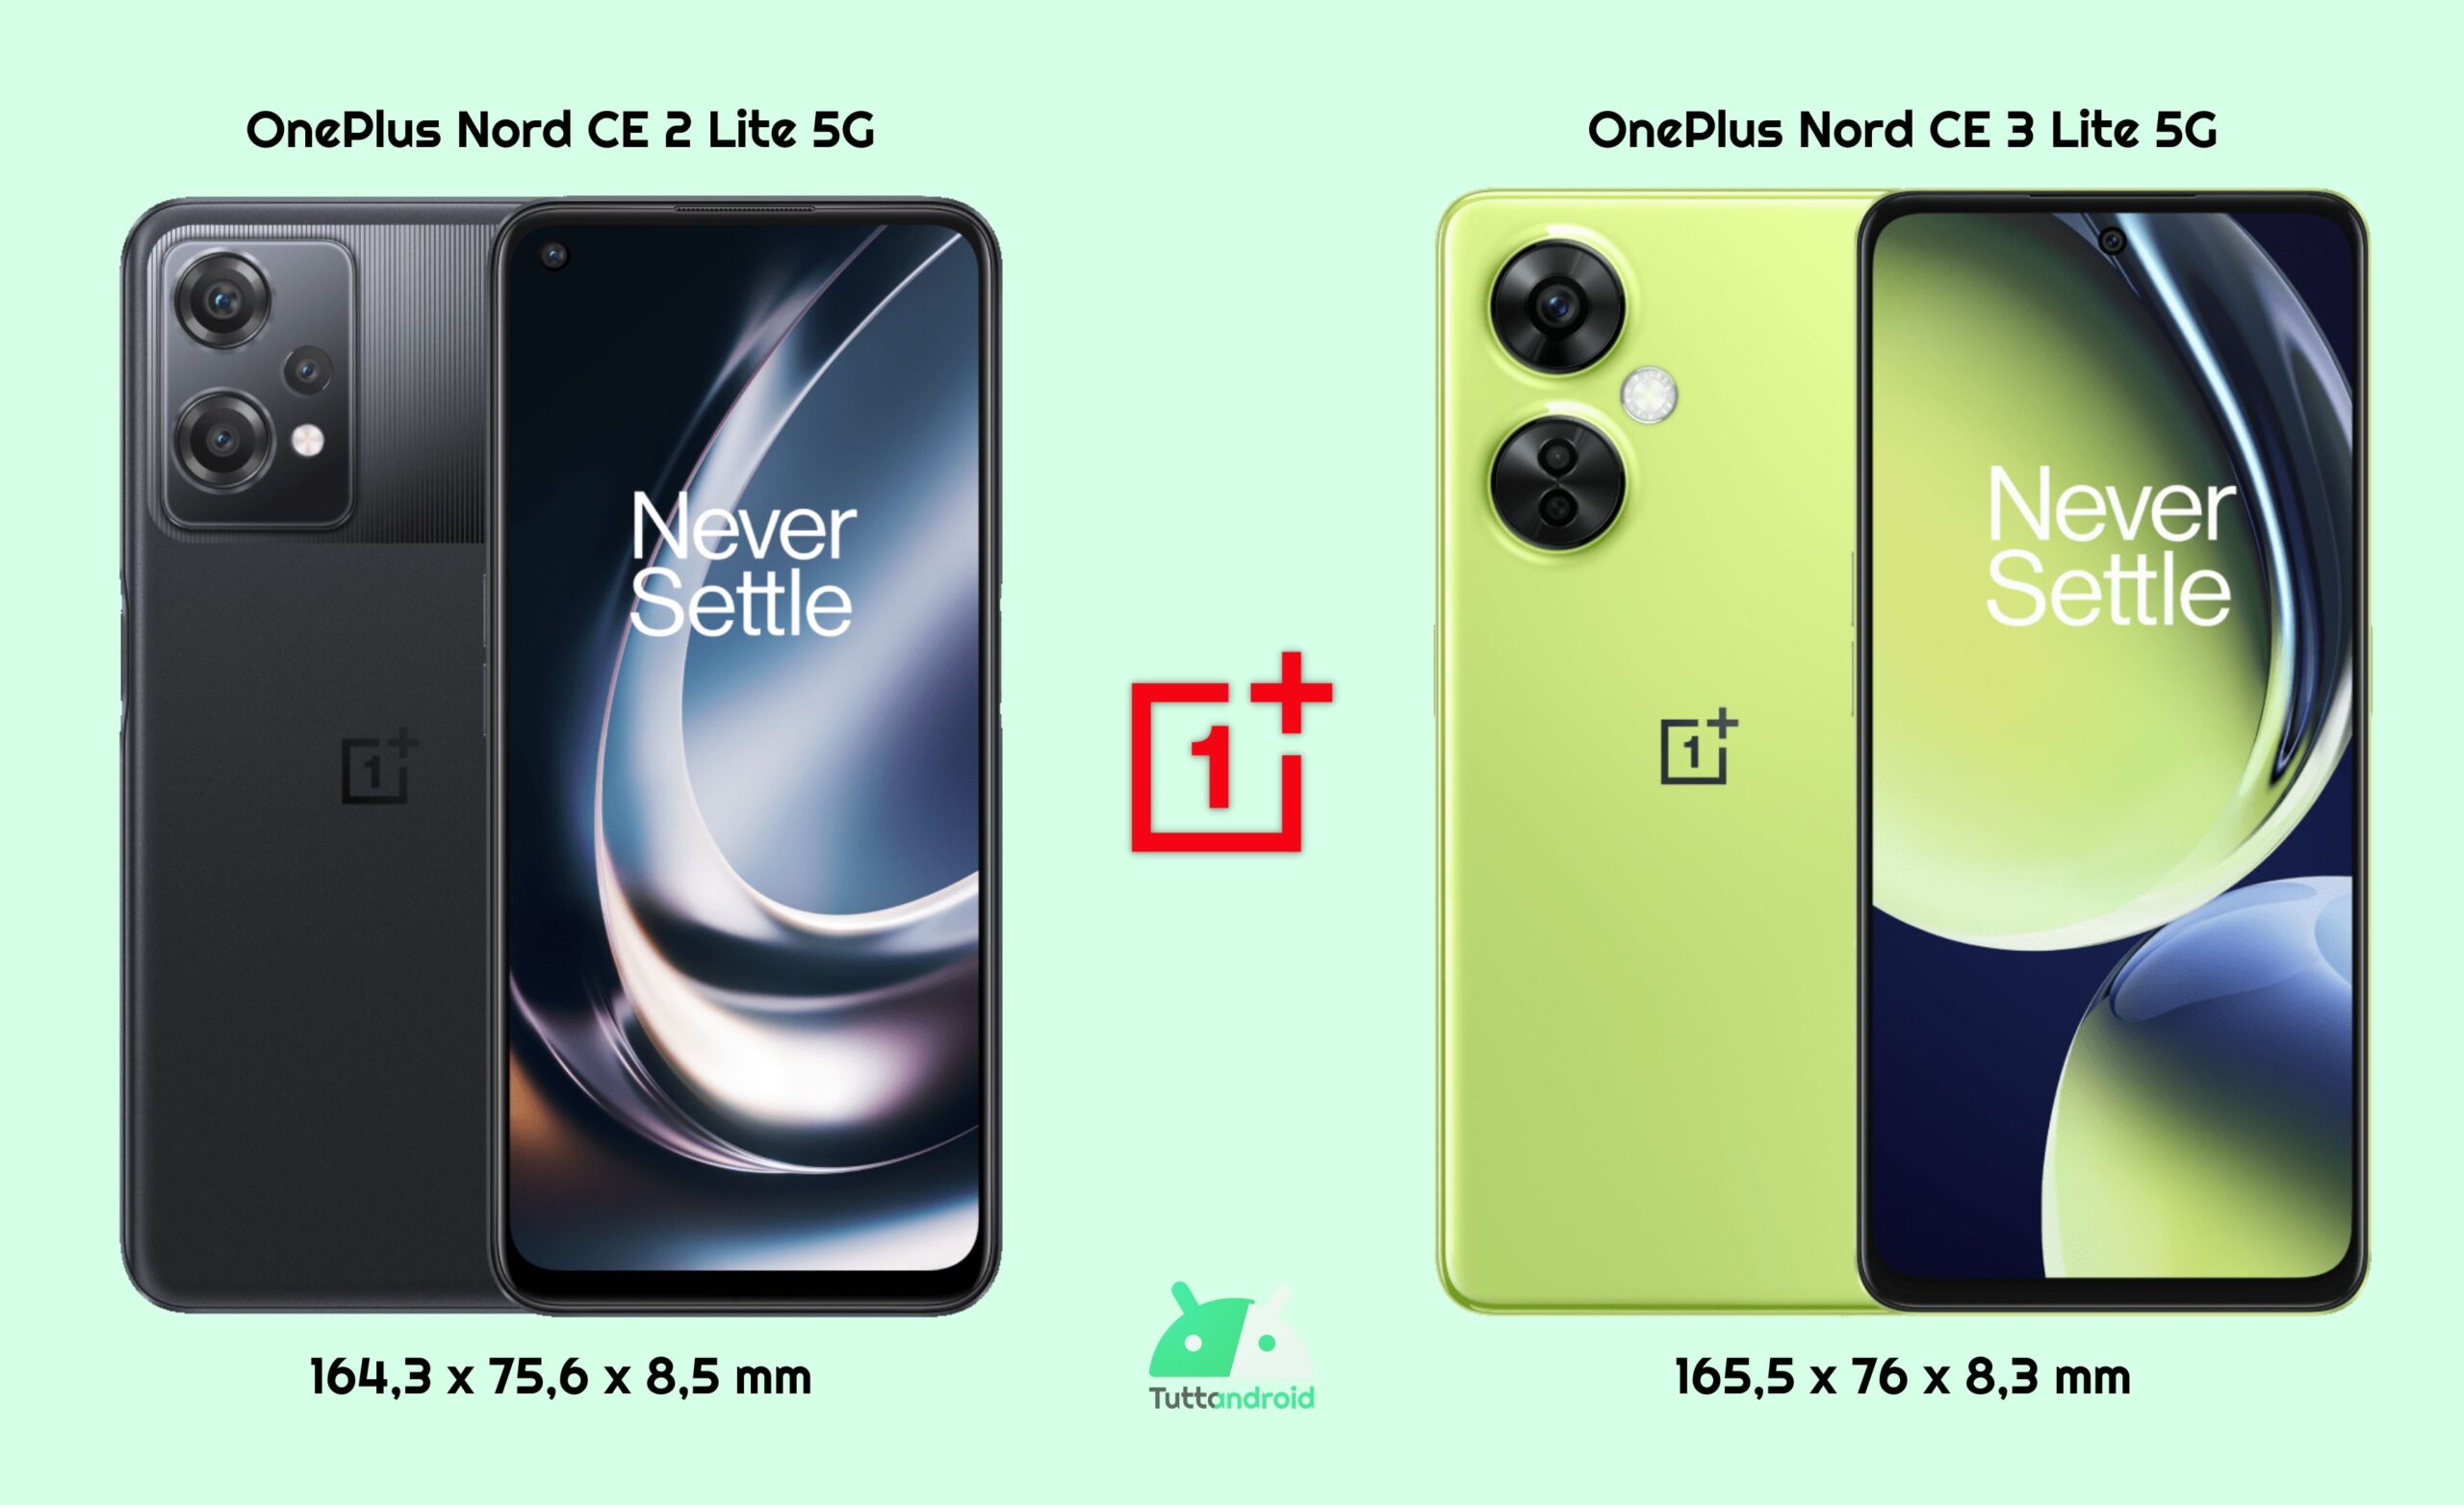 Confronto dimensioni OnePlus Nord CE 2 Lite 5G vs OnePlus Nord CE 3 Lite 5G